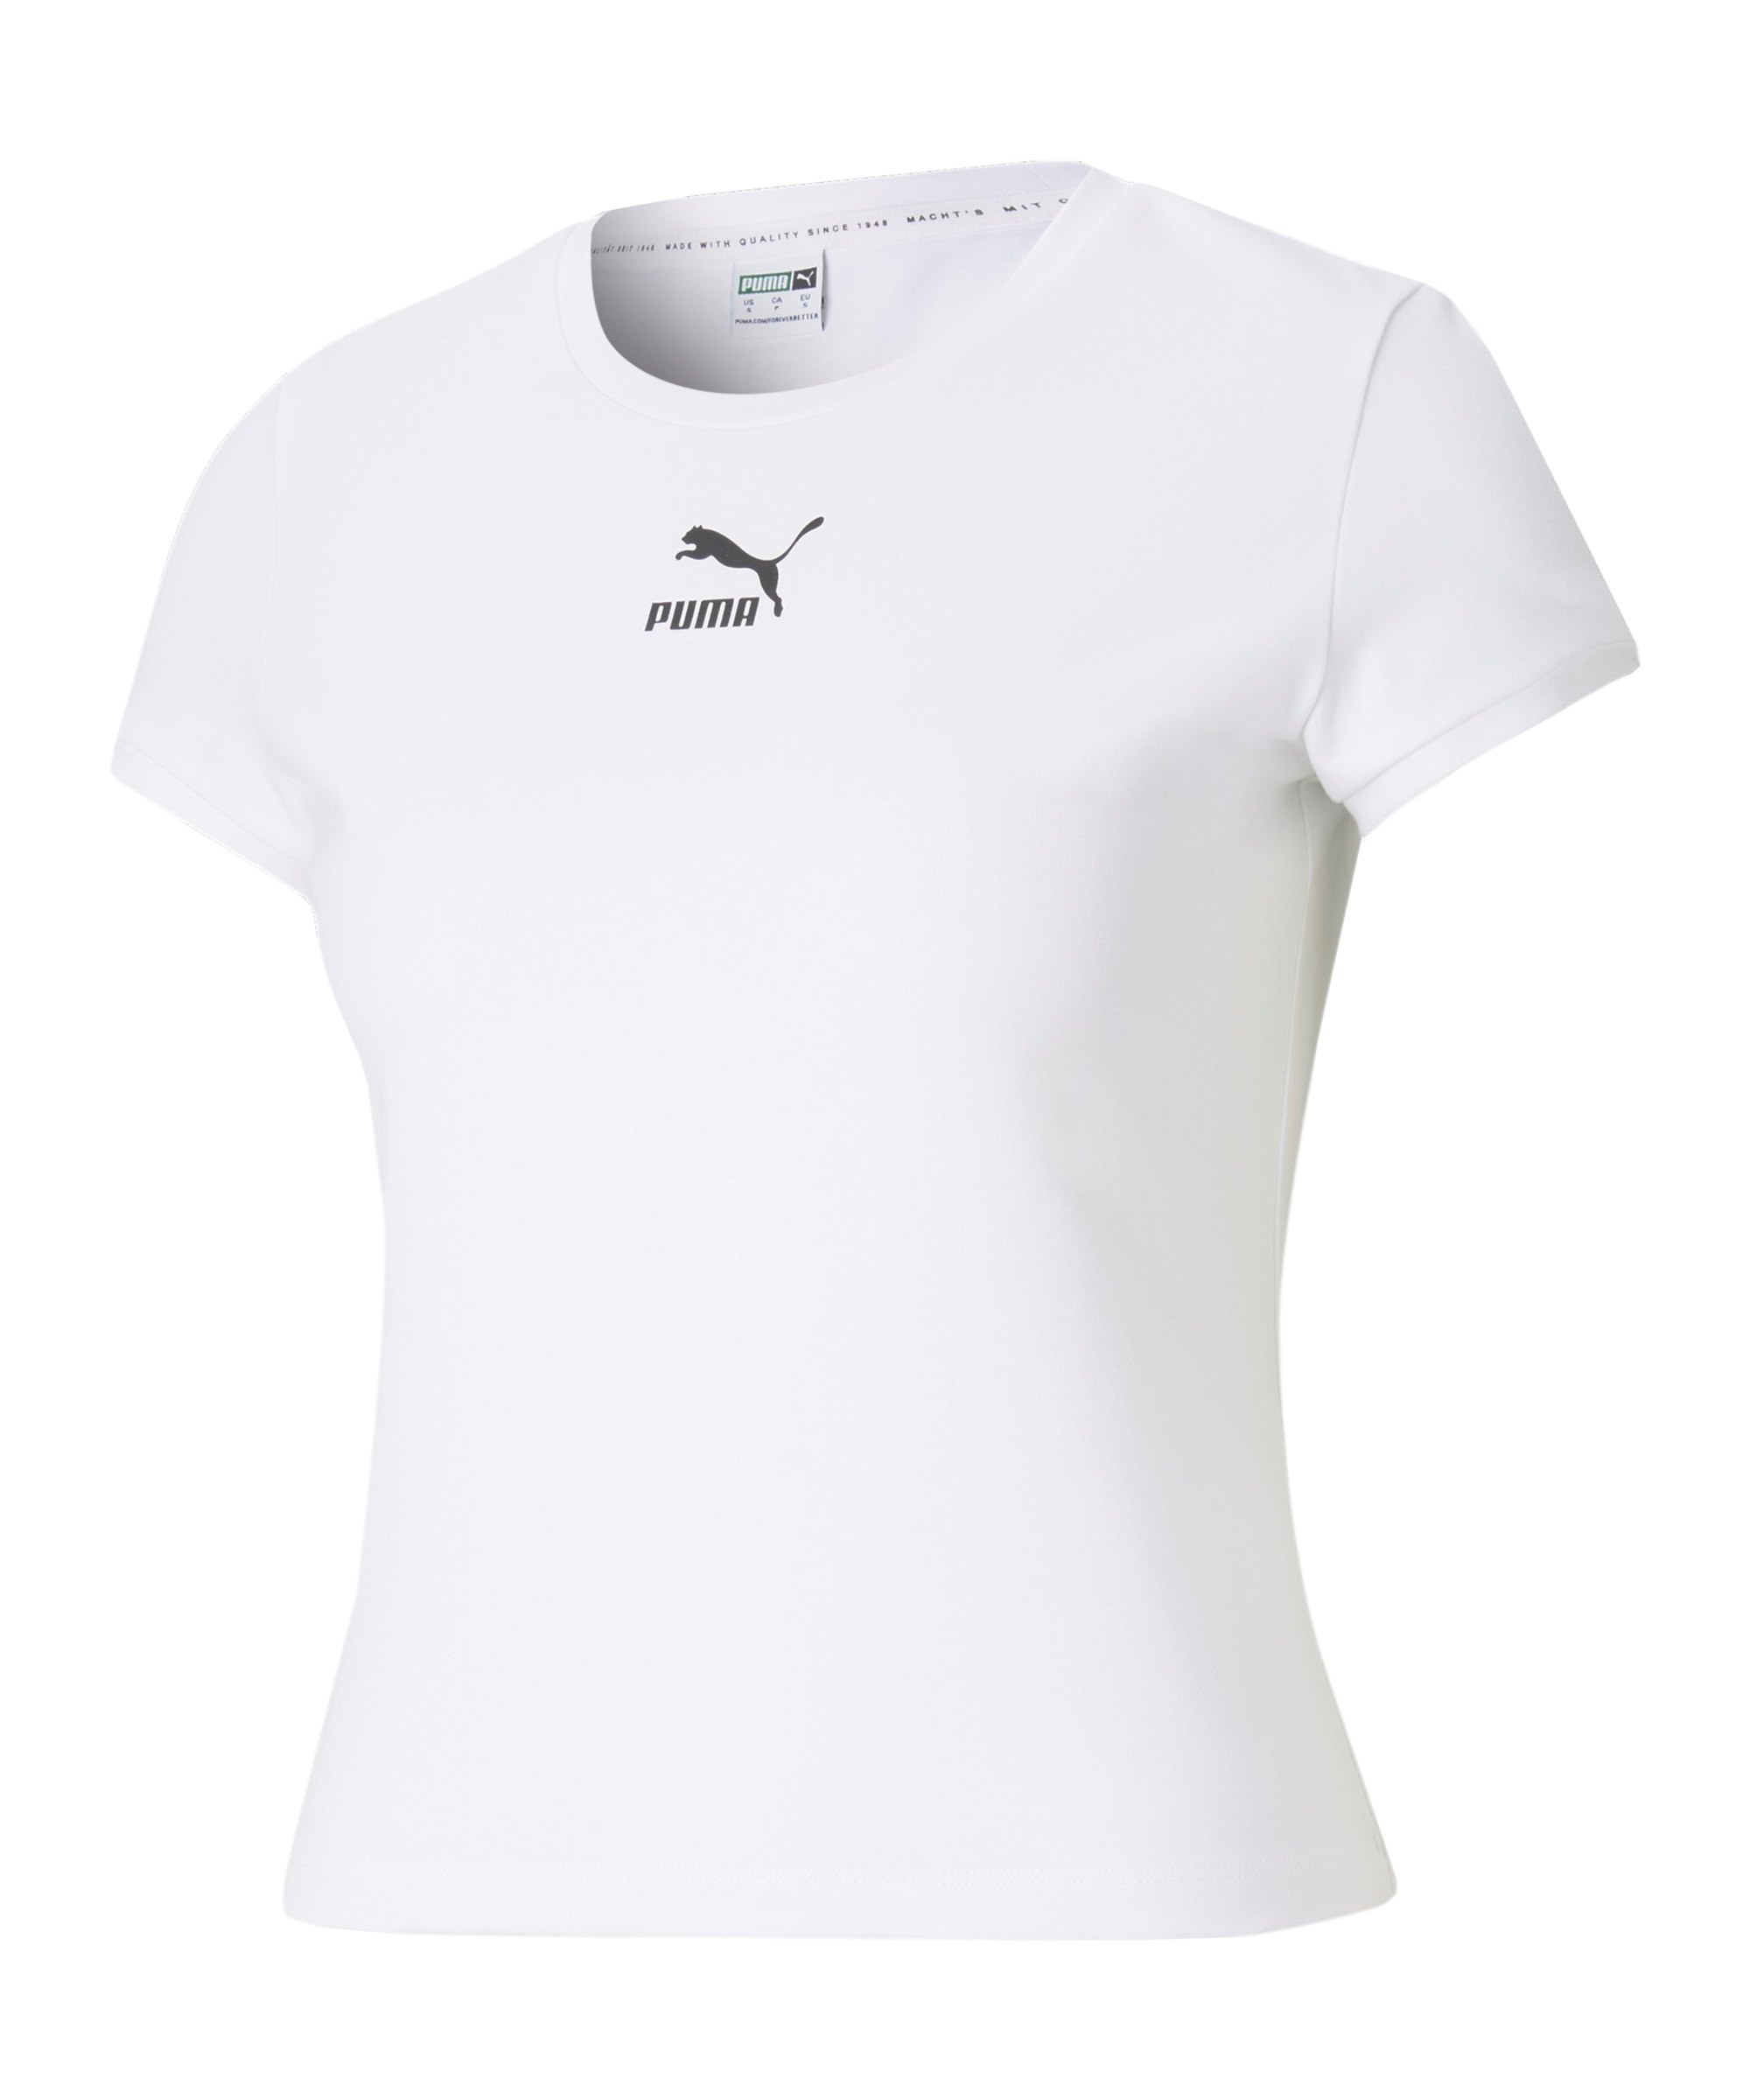 PUMA Classics Fitted T-Shirt Damen Weiss F02 - weiss